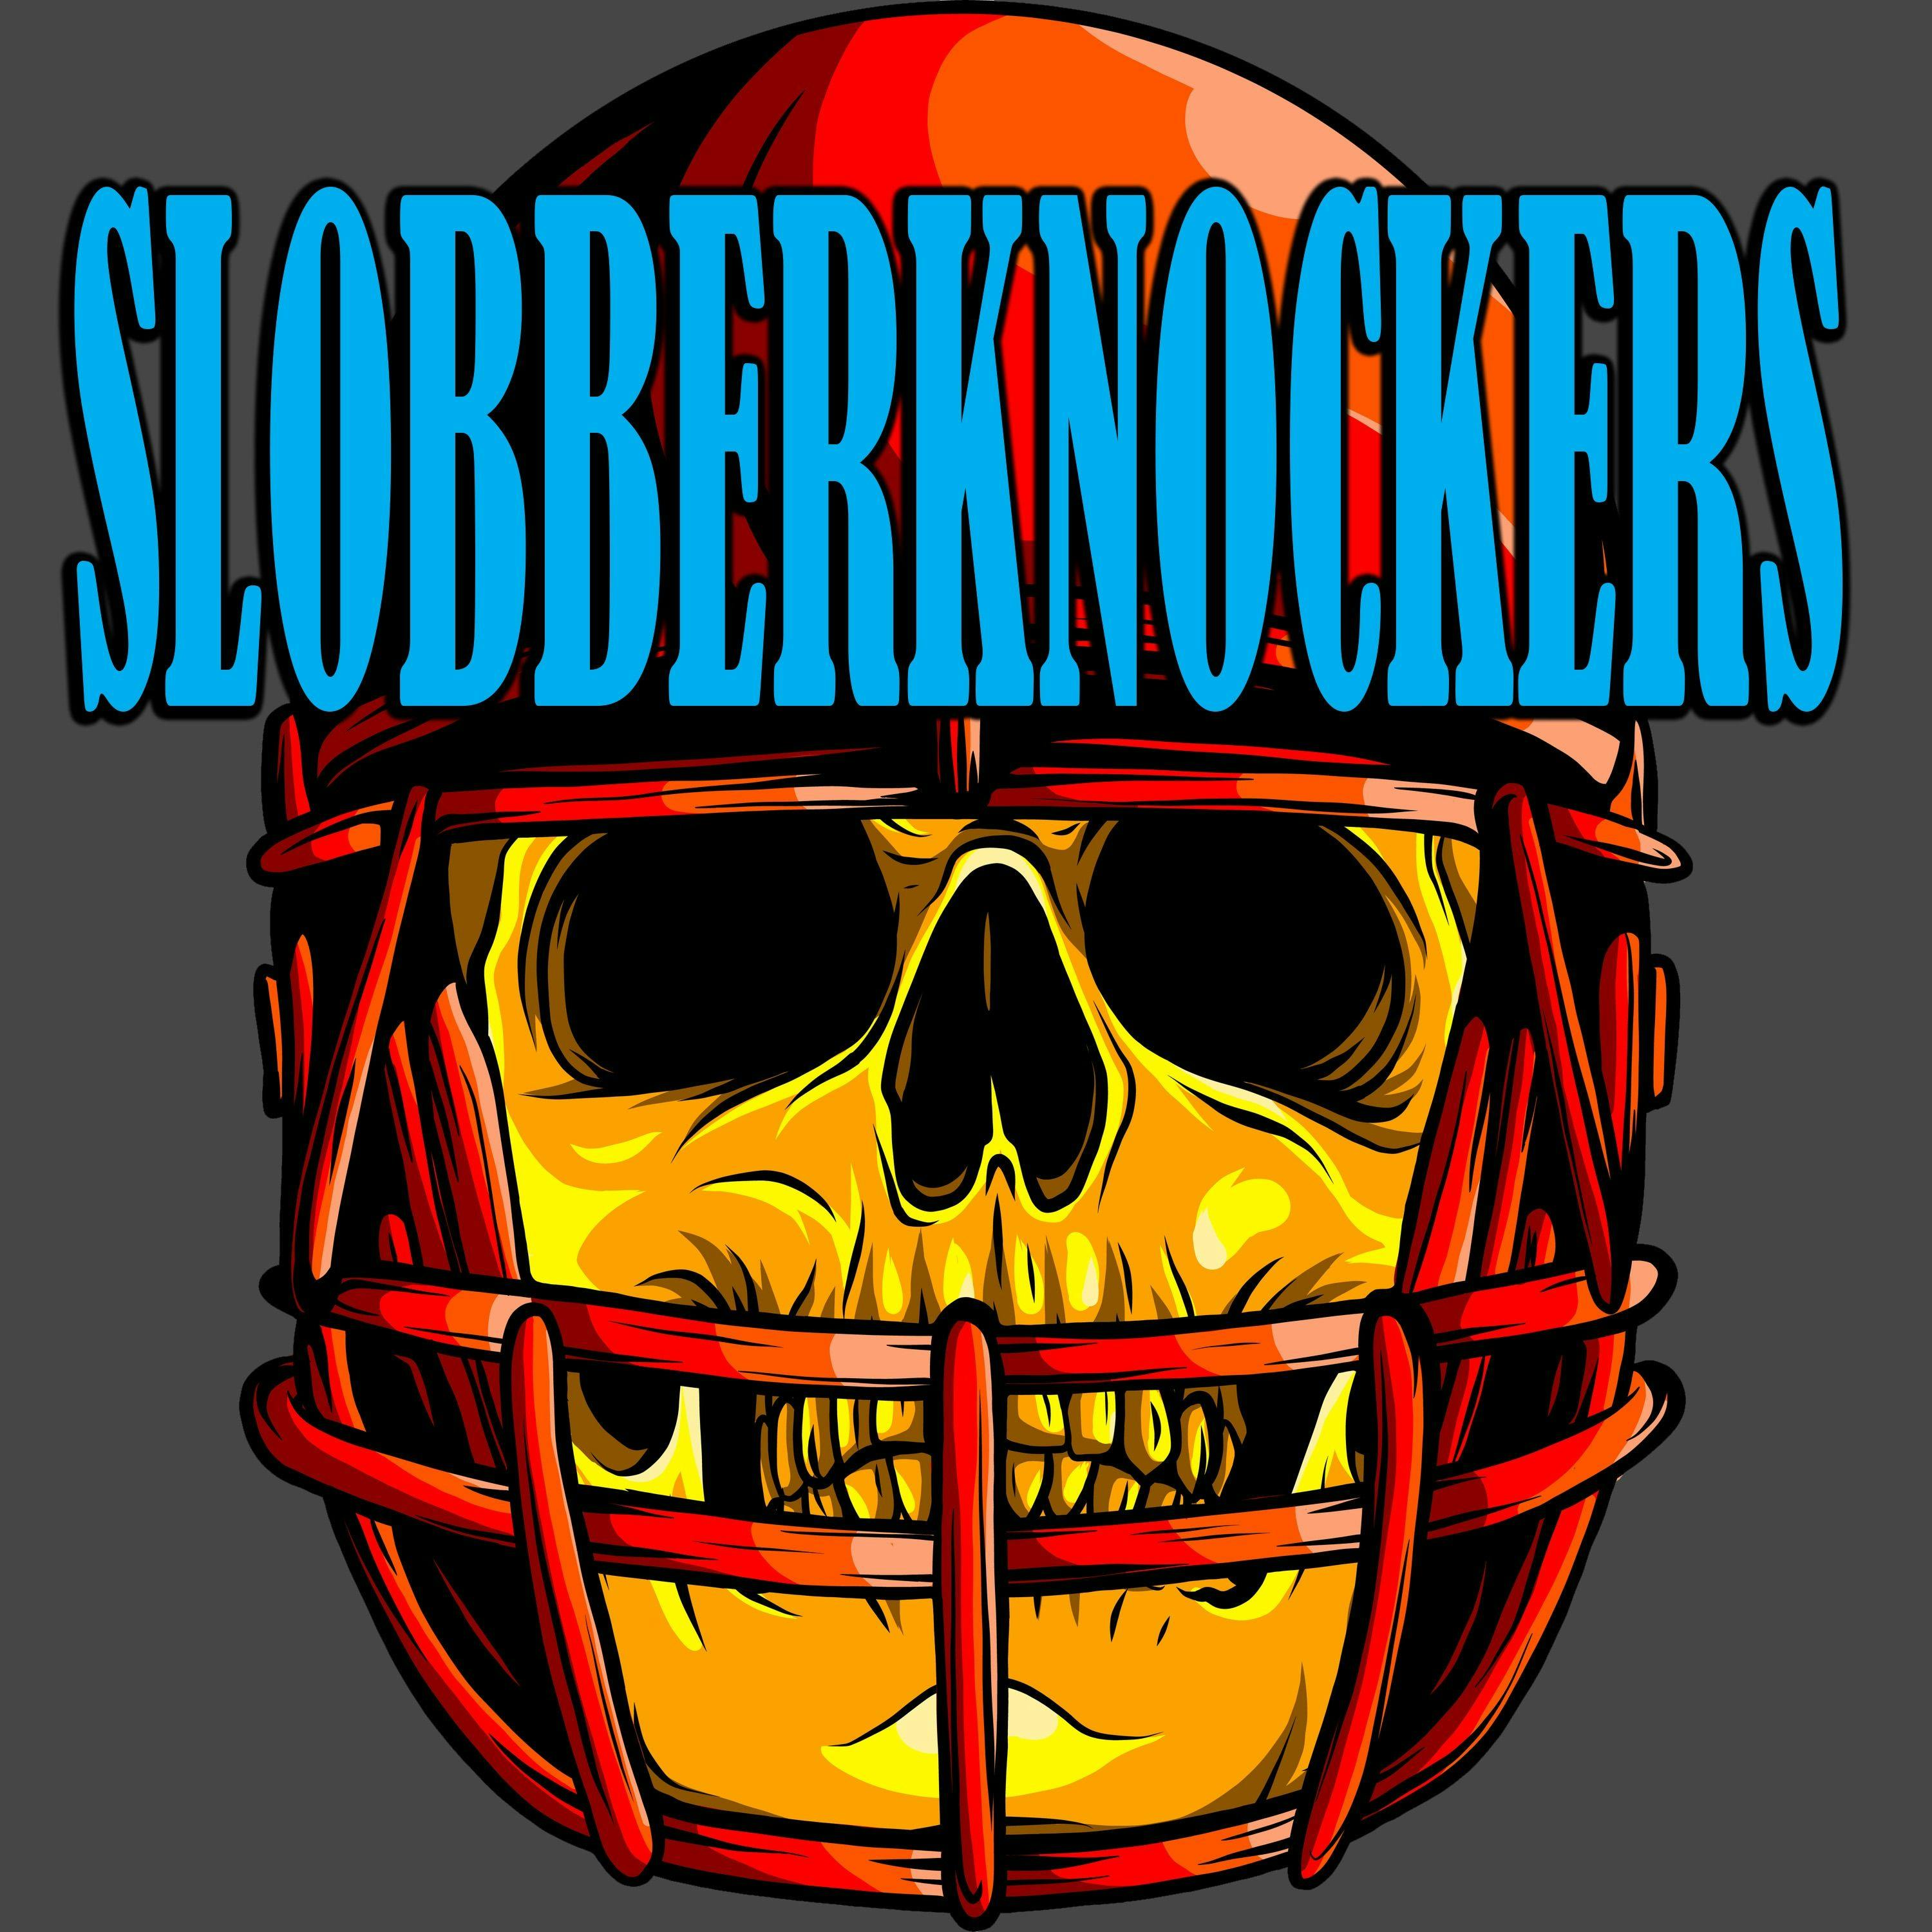 SLOBBERKNOCKERS NFL WEEK THIRTEEN